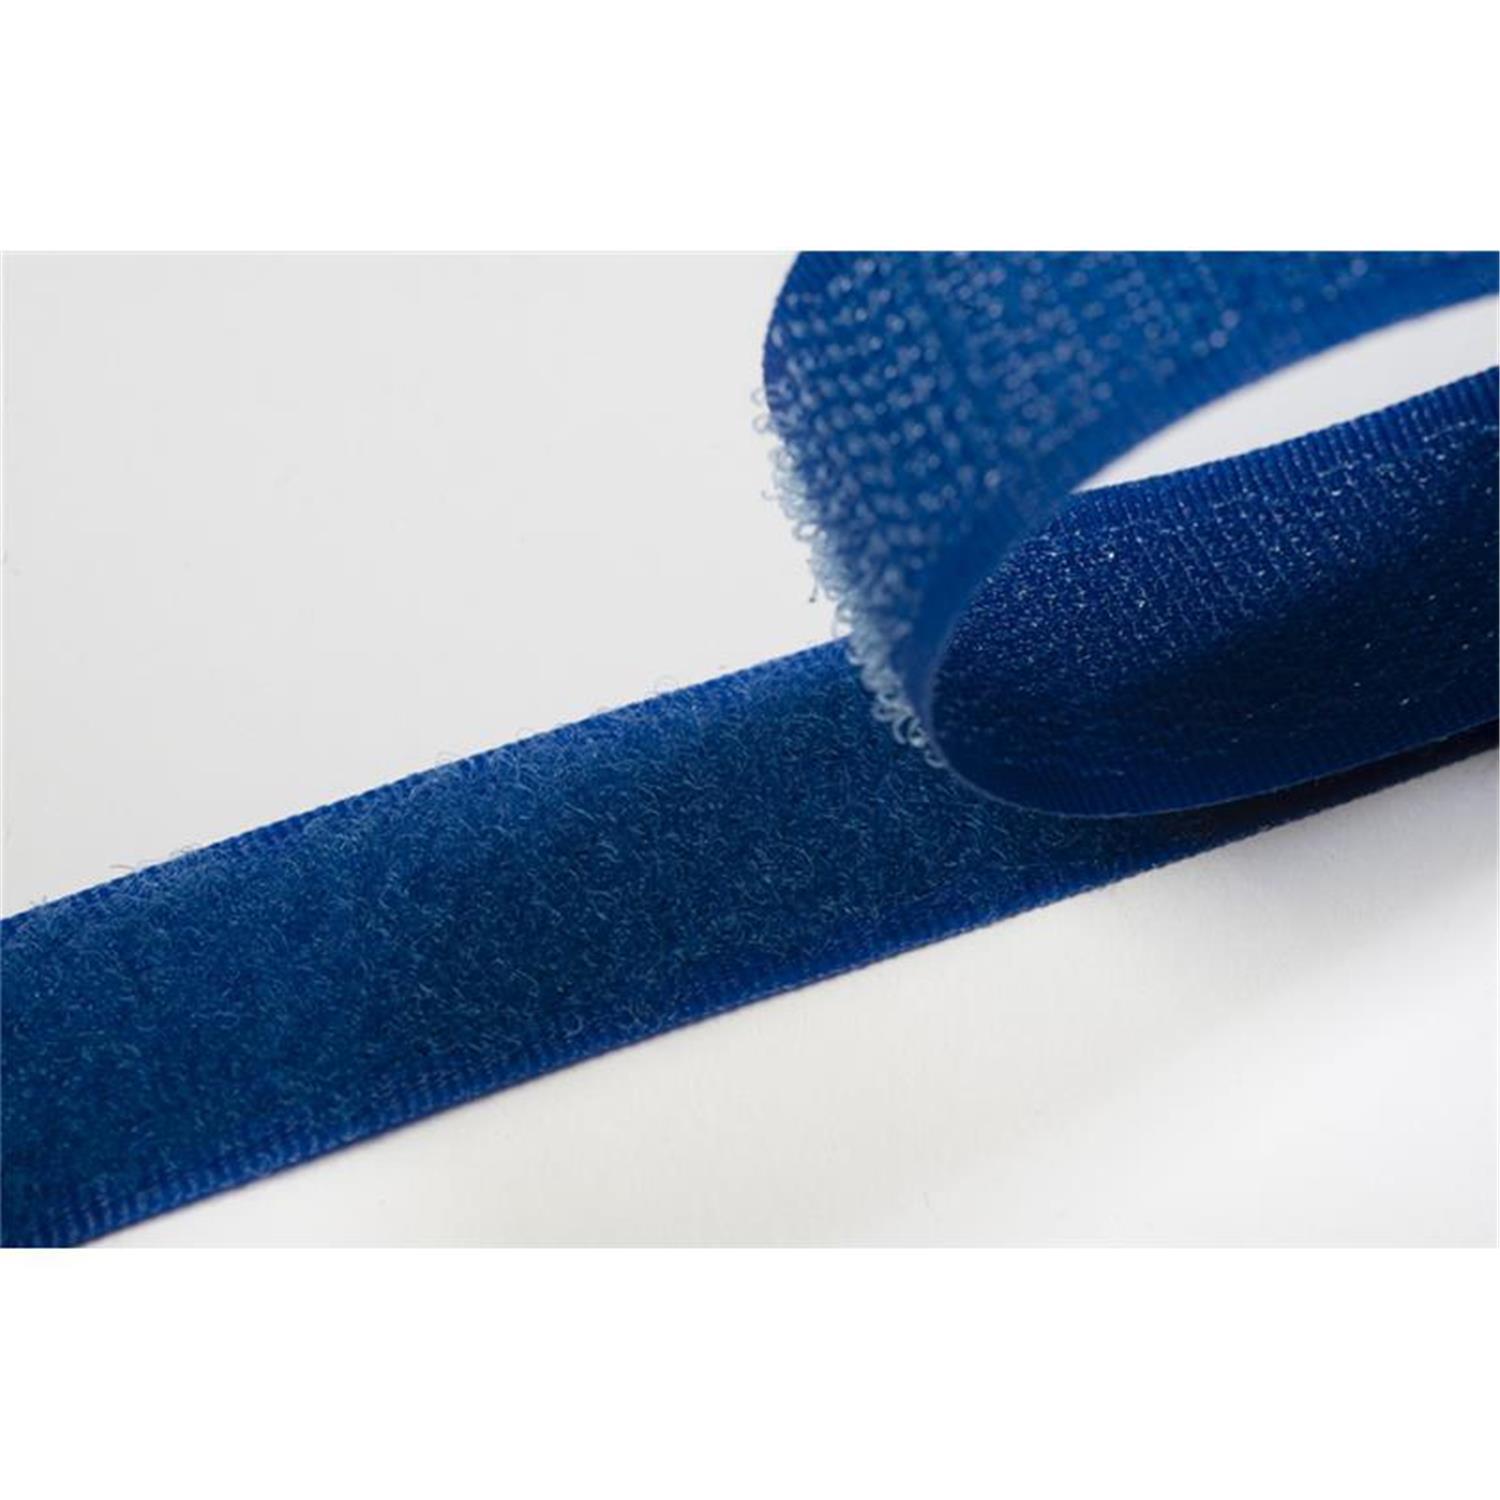 Klettband zum aufnähen, 100 mm, royalblau #06 1 Meter